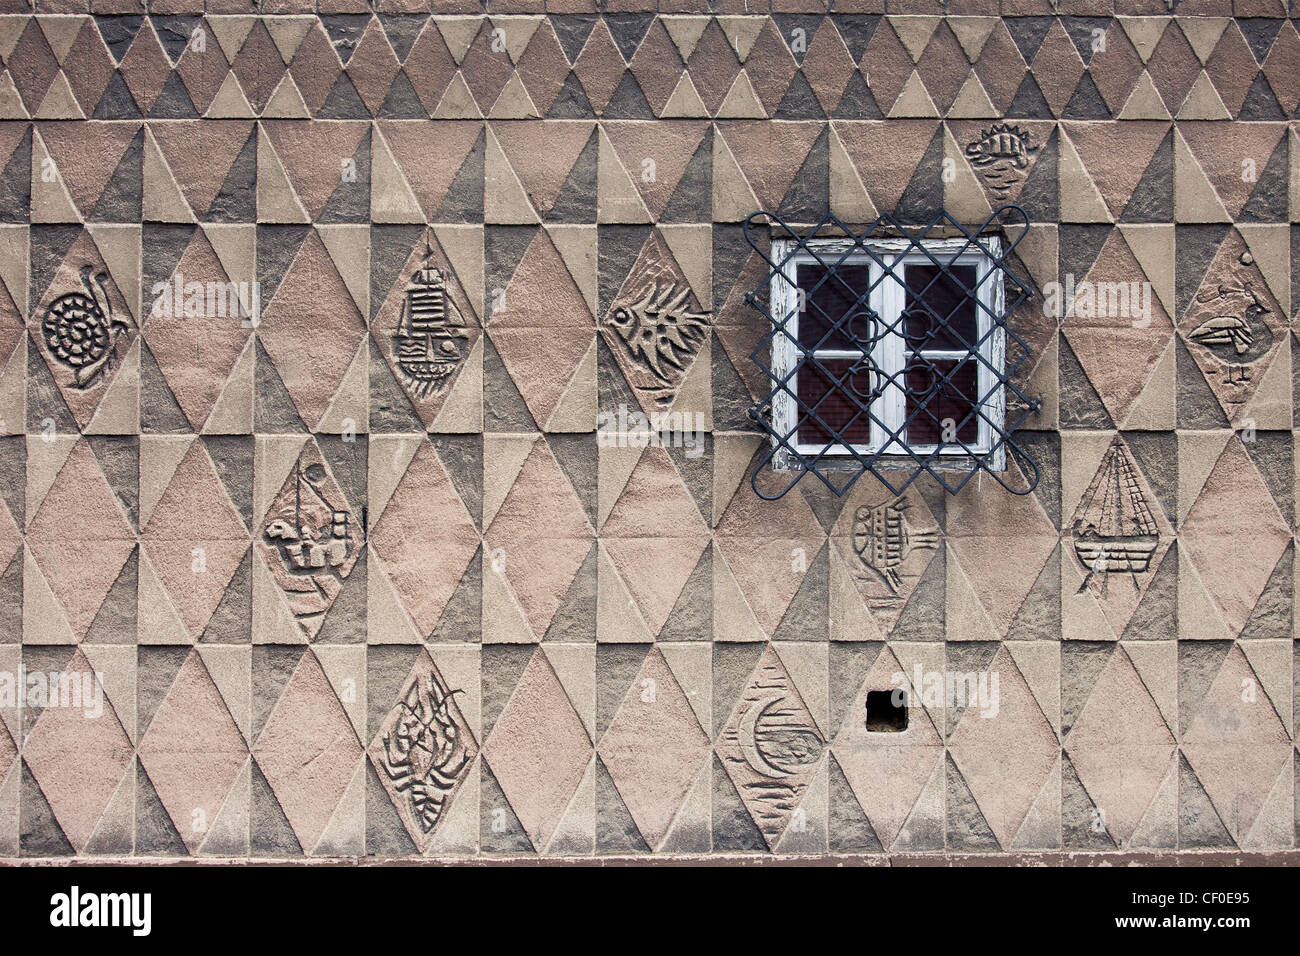 Triangular, rechteckige und symmetrische Muster Raute-design mit marine-Motiven auf der historischen Hauswand. Stockfoto